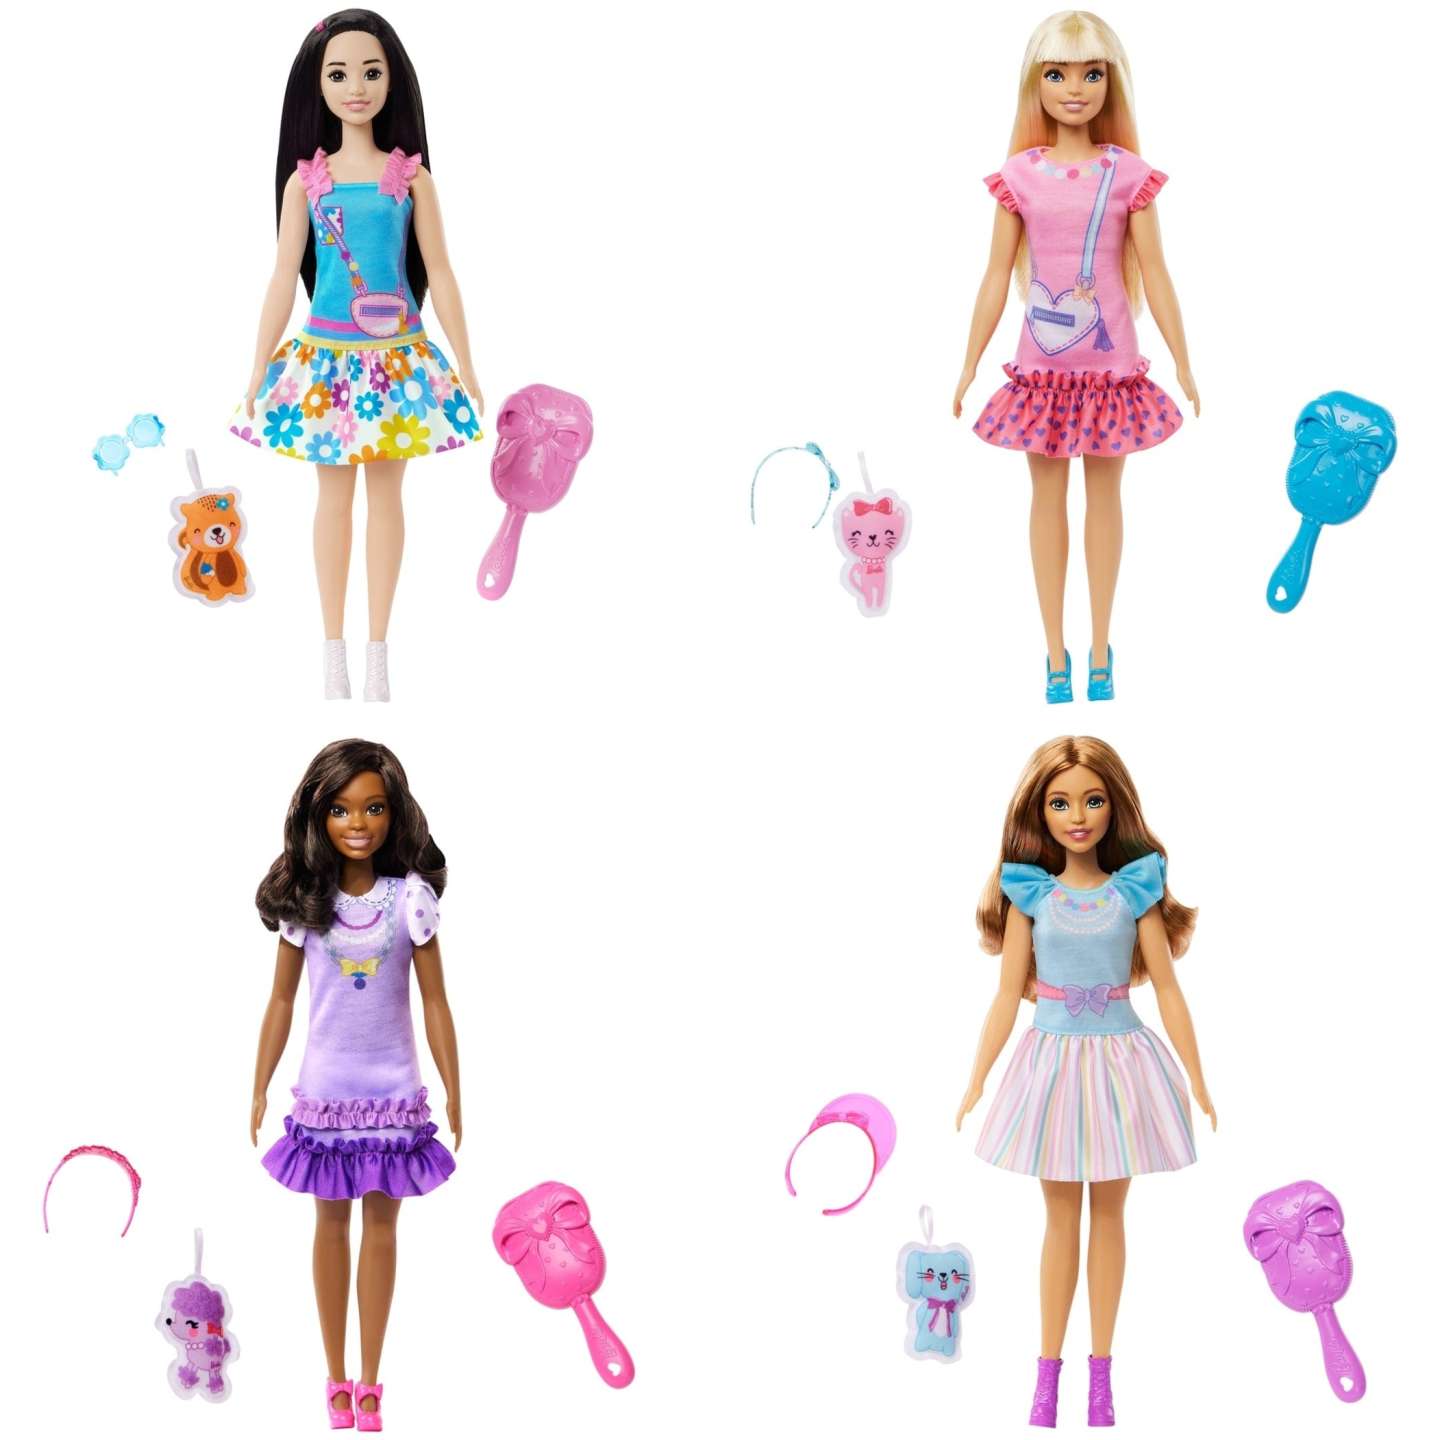 Barbie: Barbie Mu√±ecas Mi Primera Barbie Aleatoria